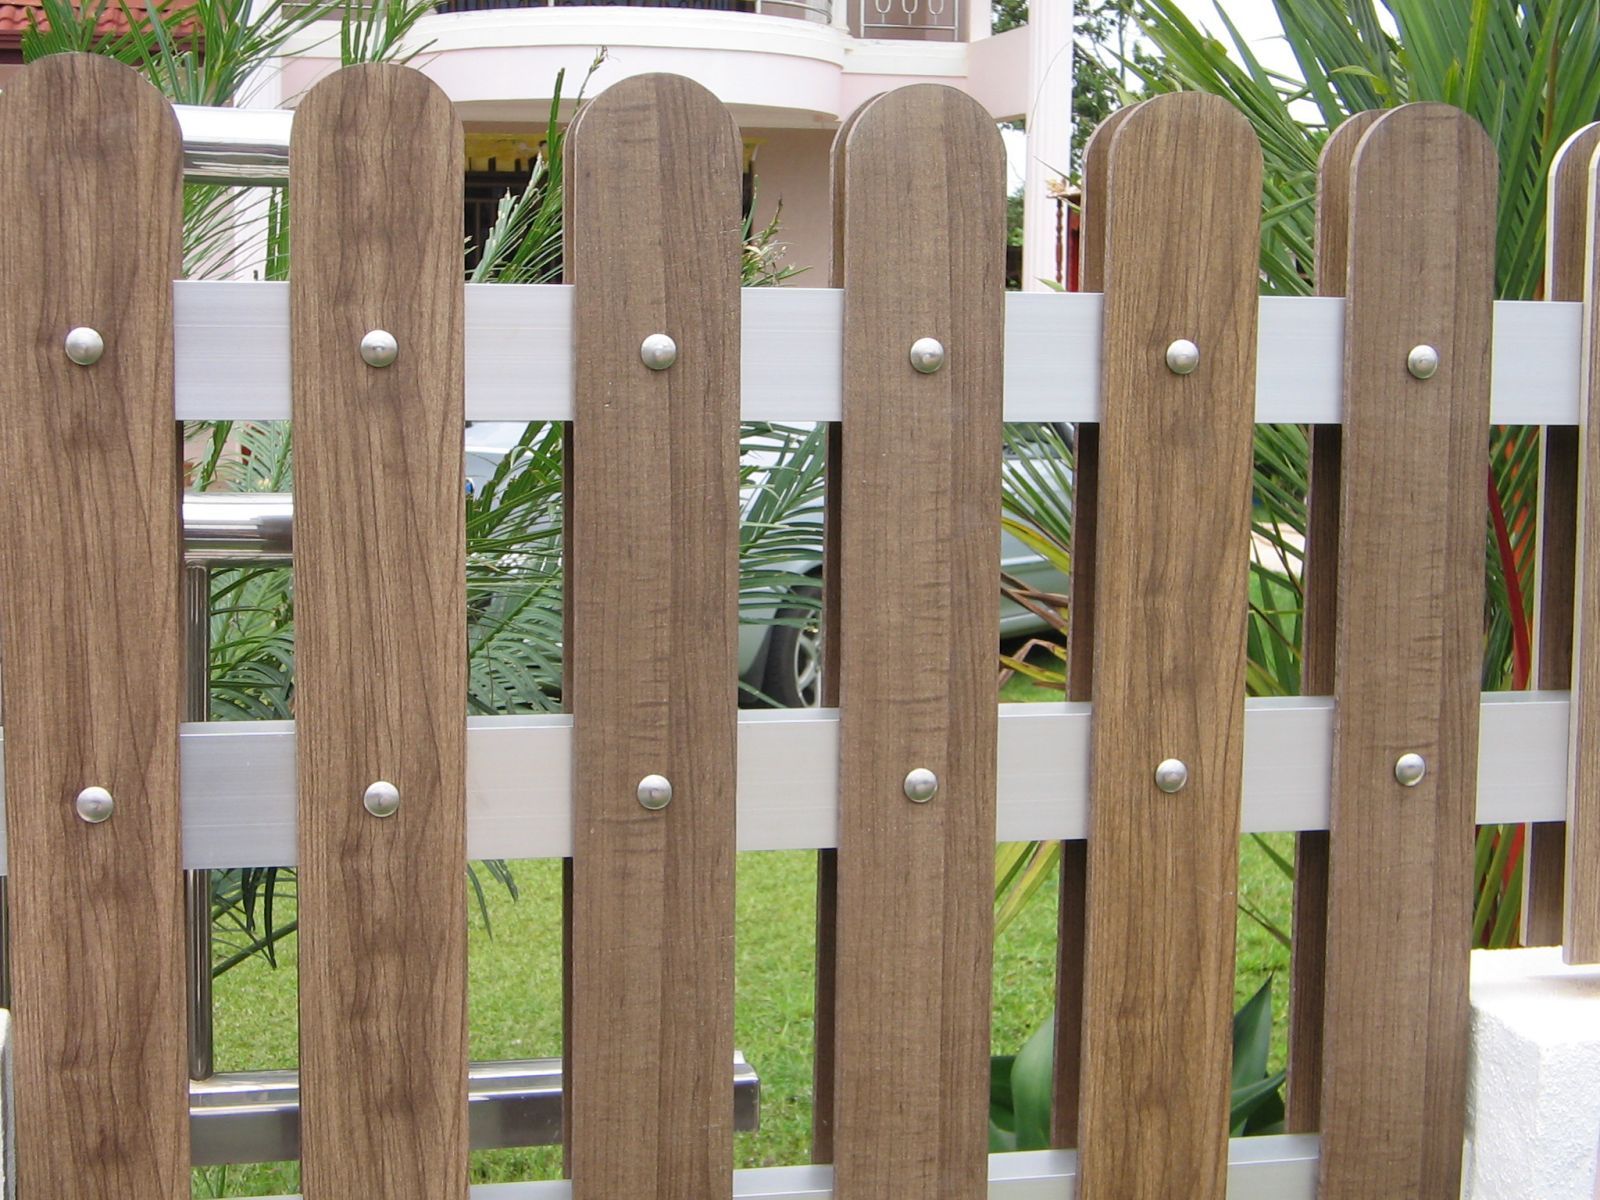 mẫu hàng rào bằng gỗ